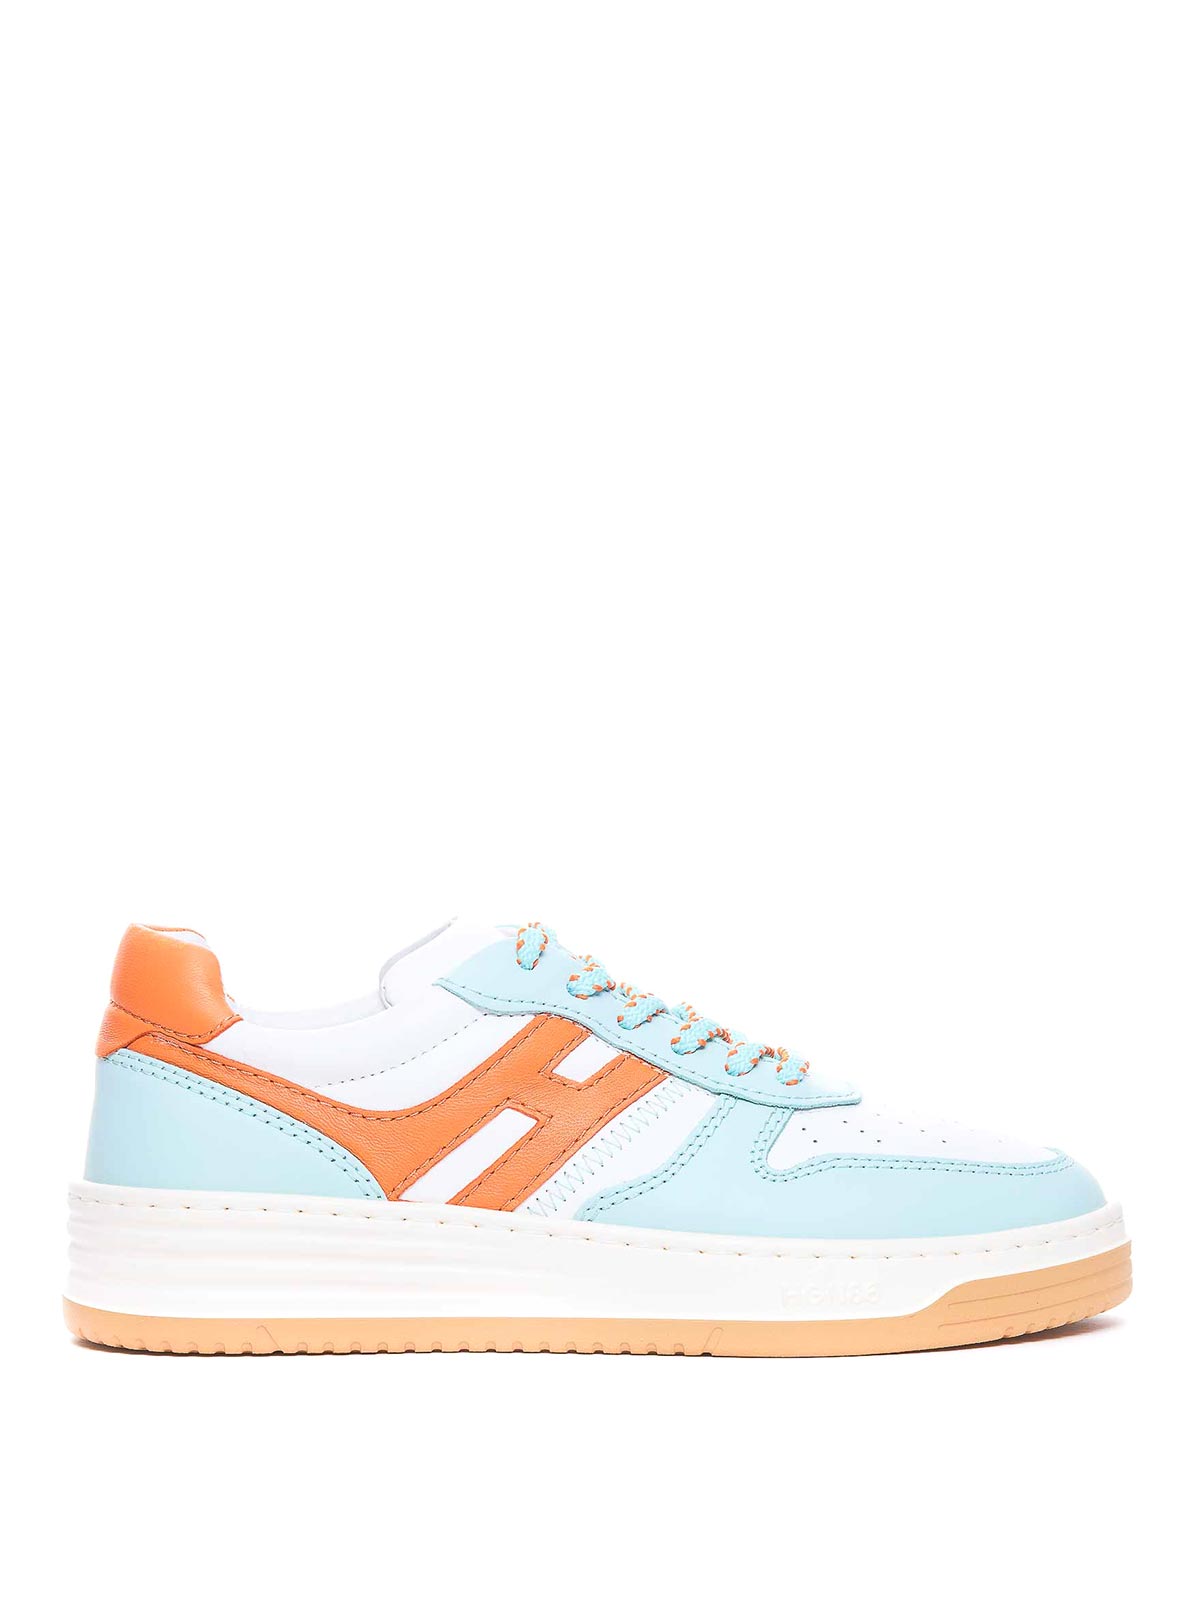 Hogan H630 Sneakers In Orange